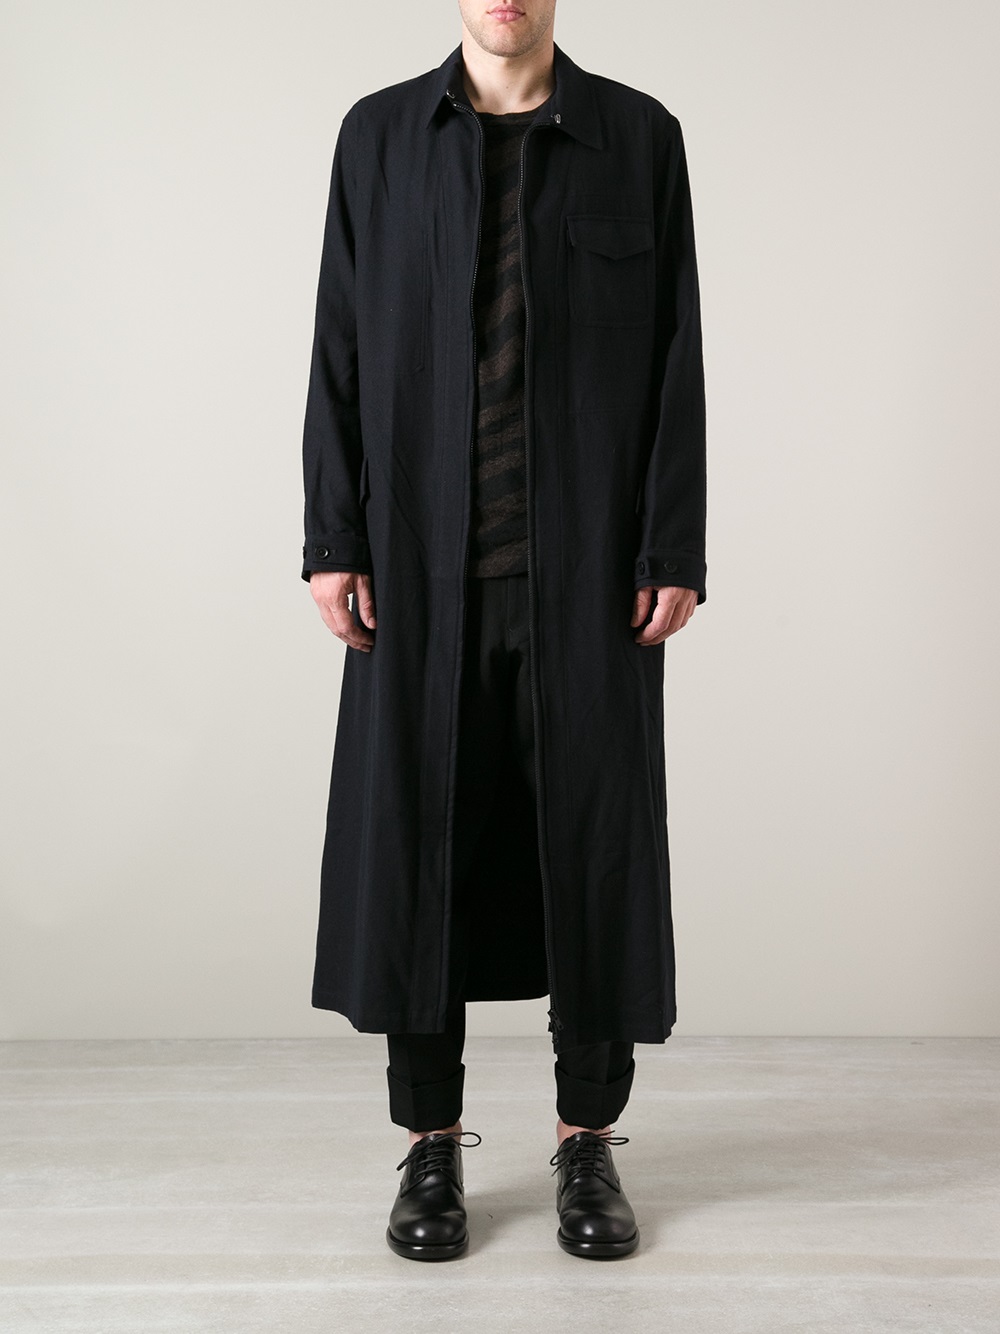 Lyst - Yohji Yamamoto Long Unlined Jacket in Black for Men